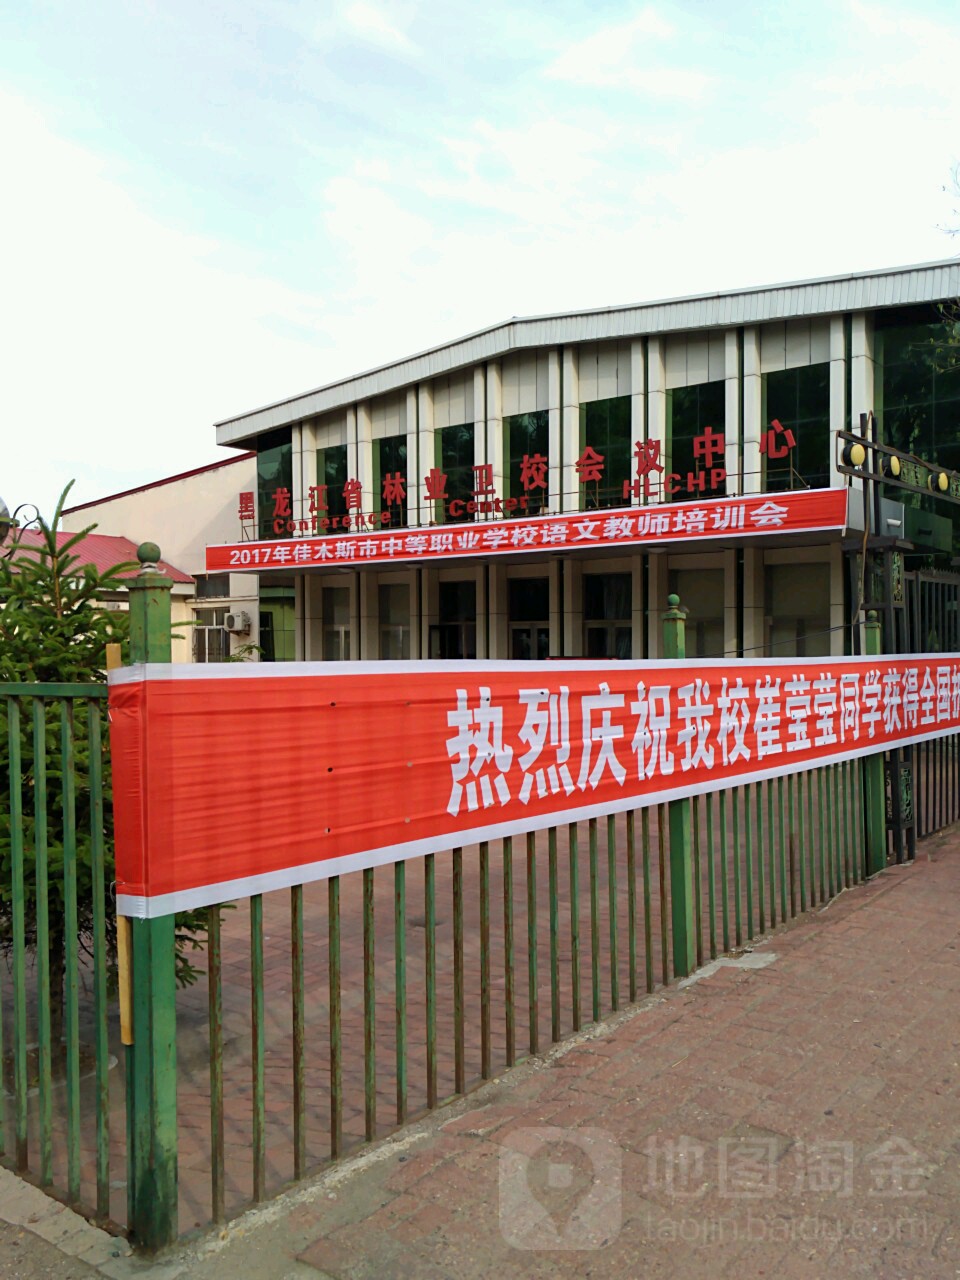 黑龙江省农业卫校会议中心